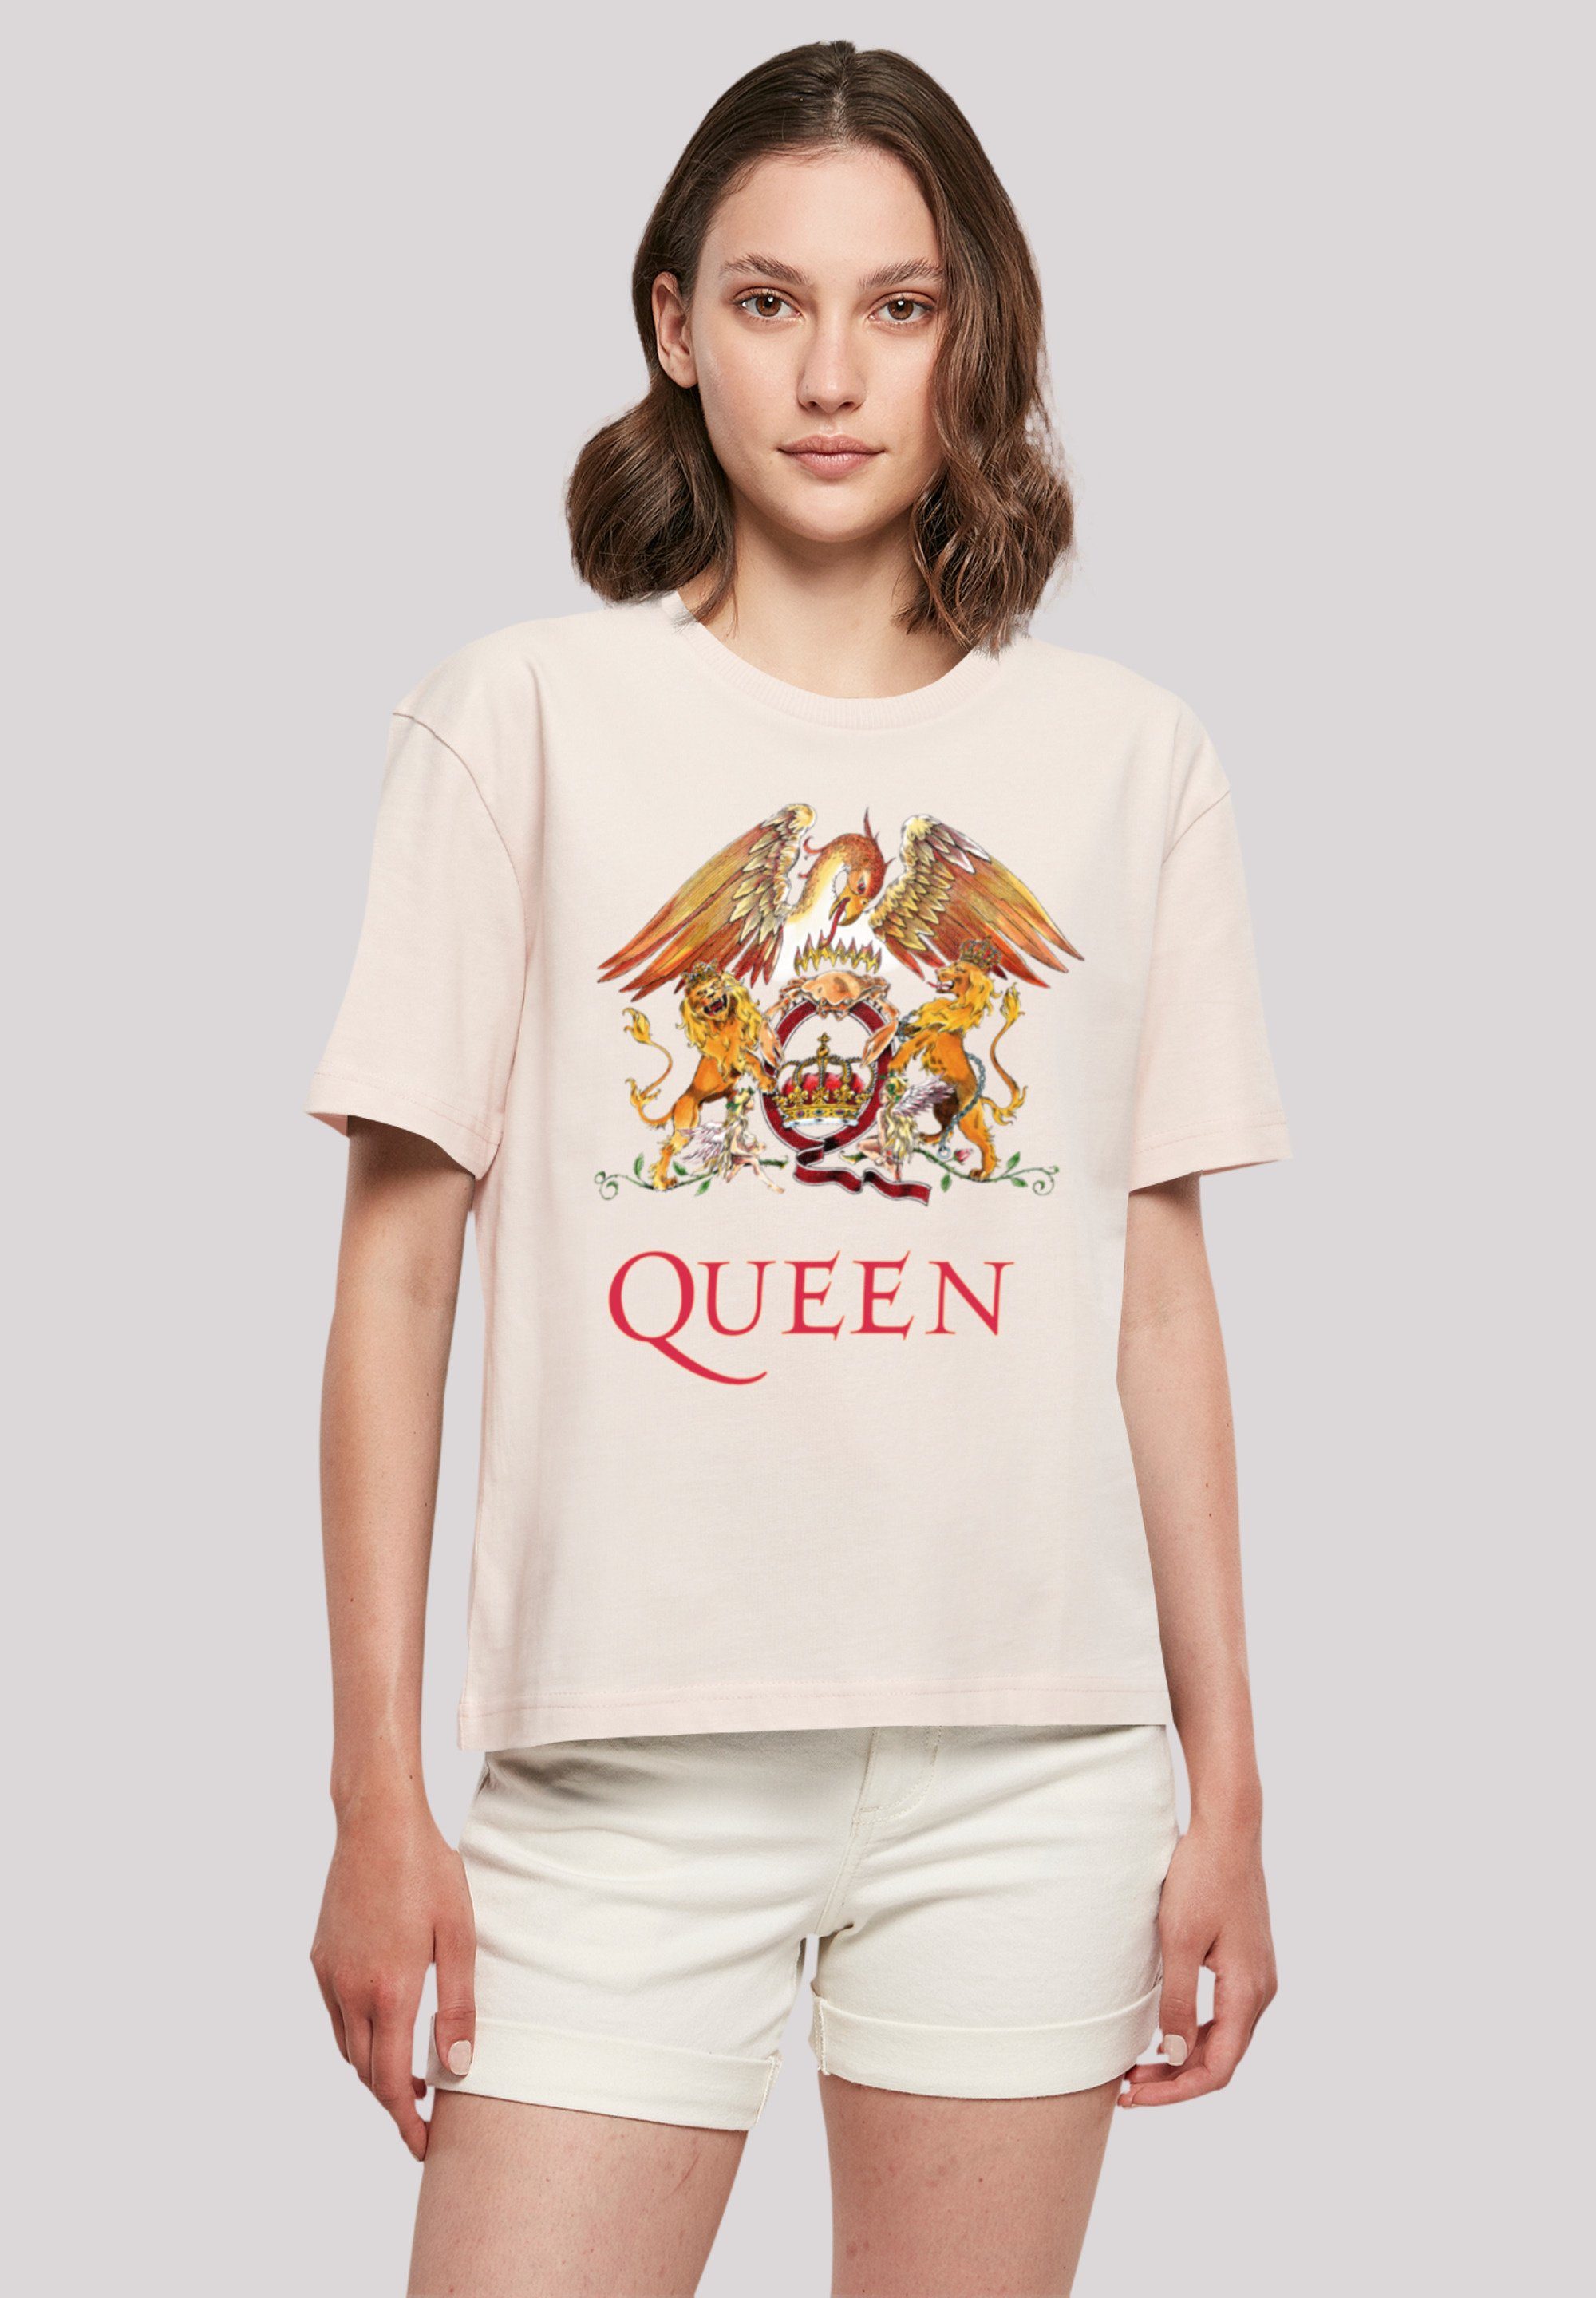 F4NT4STIC T-Shirt Queen Look für Classic stylischen Gerippter Crest Rundhalsausschnitt Print